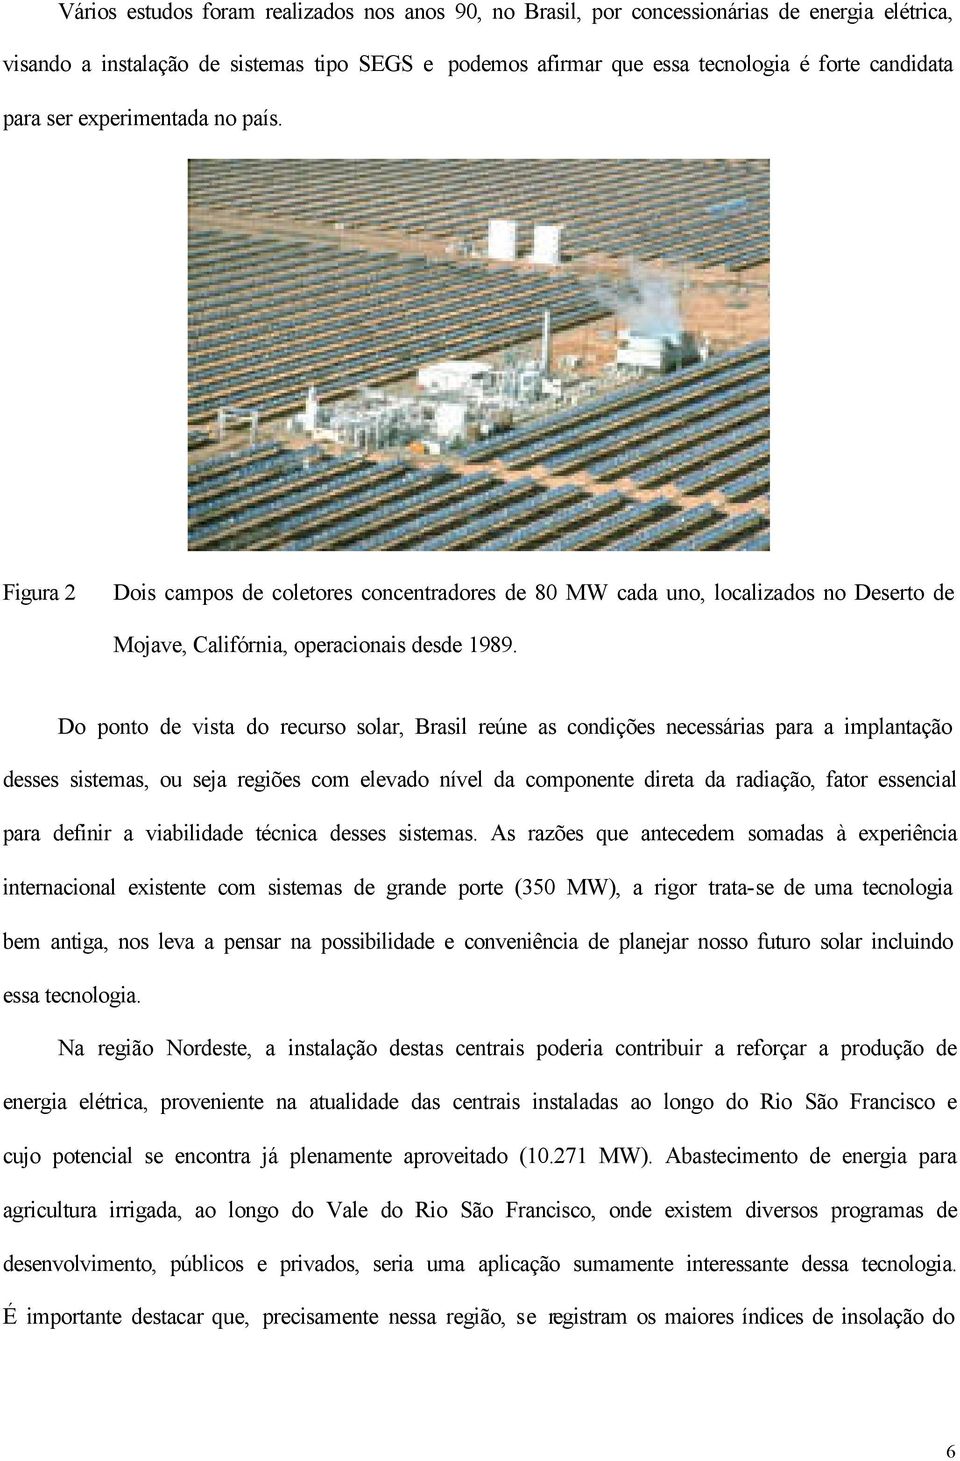 Do ponto de vista do recurso solar, Brasil reúne as condições necessárias para a implantação desses sistemas, ou seja regiões com elevado nível da componente direta da radiação, fator essencial para